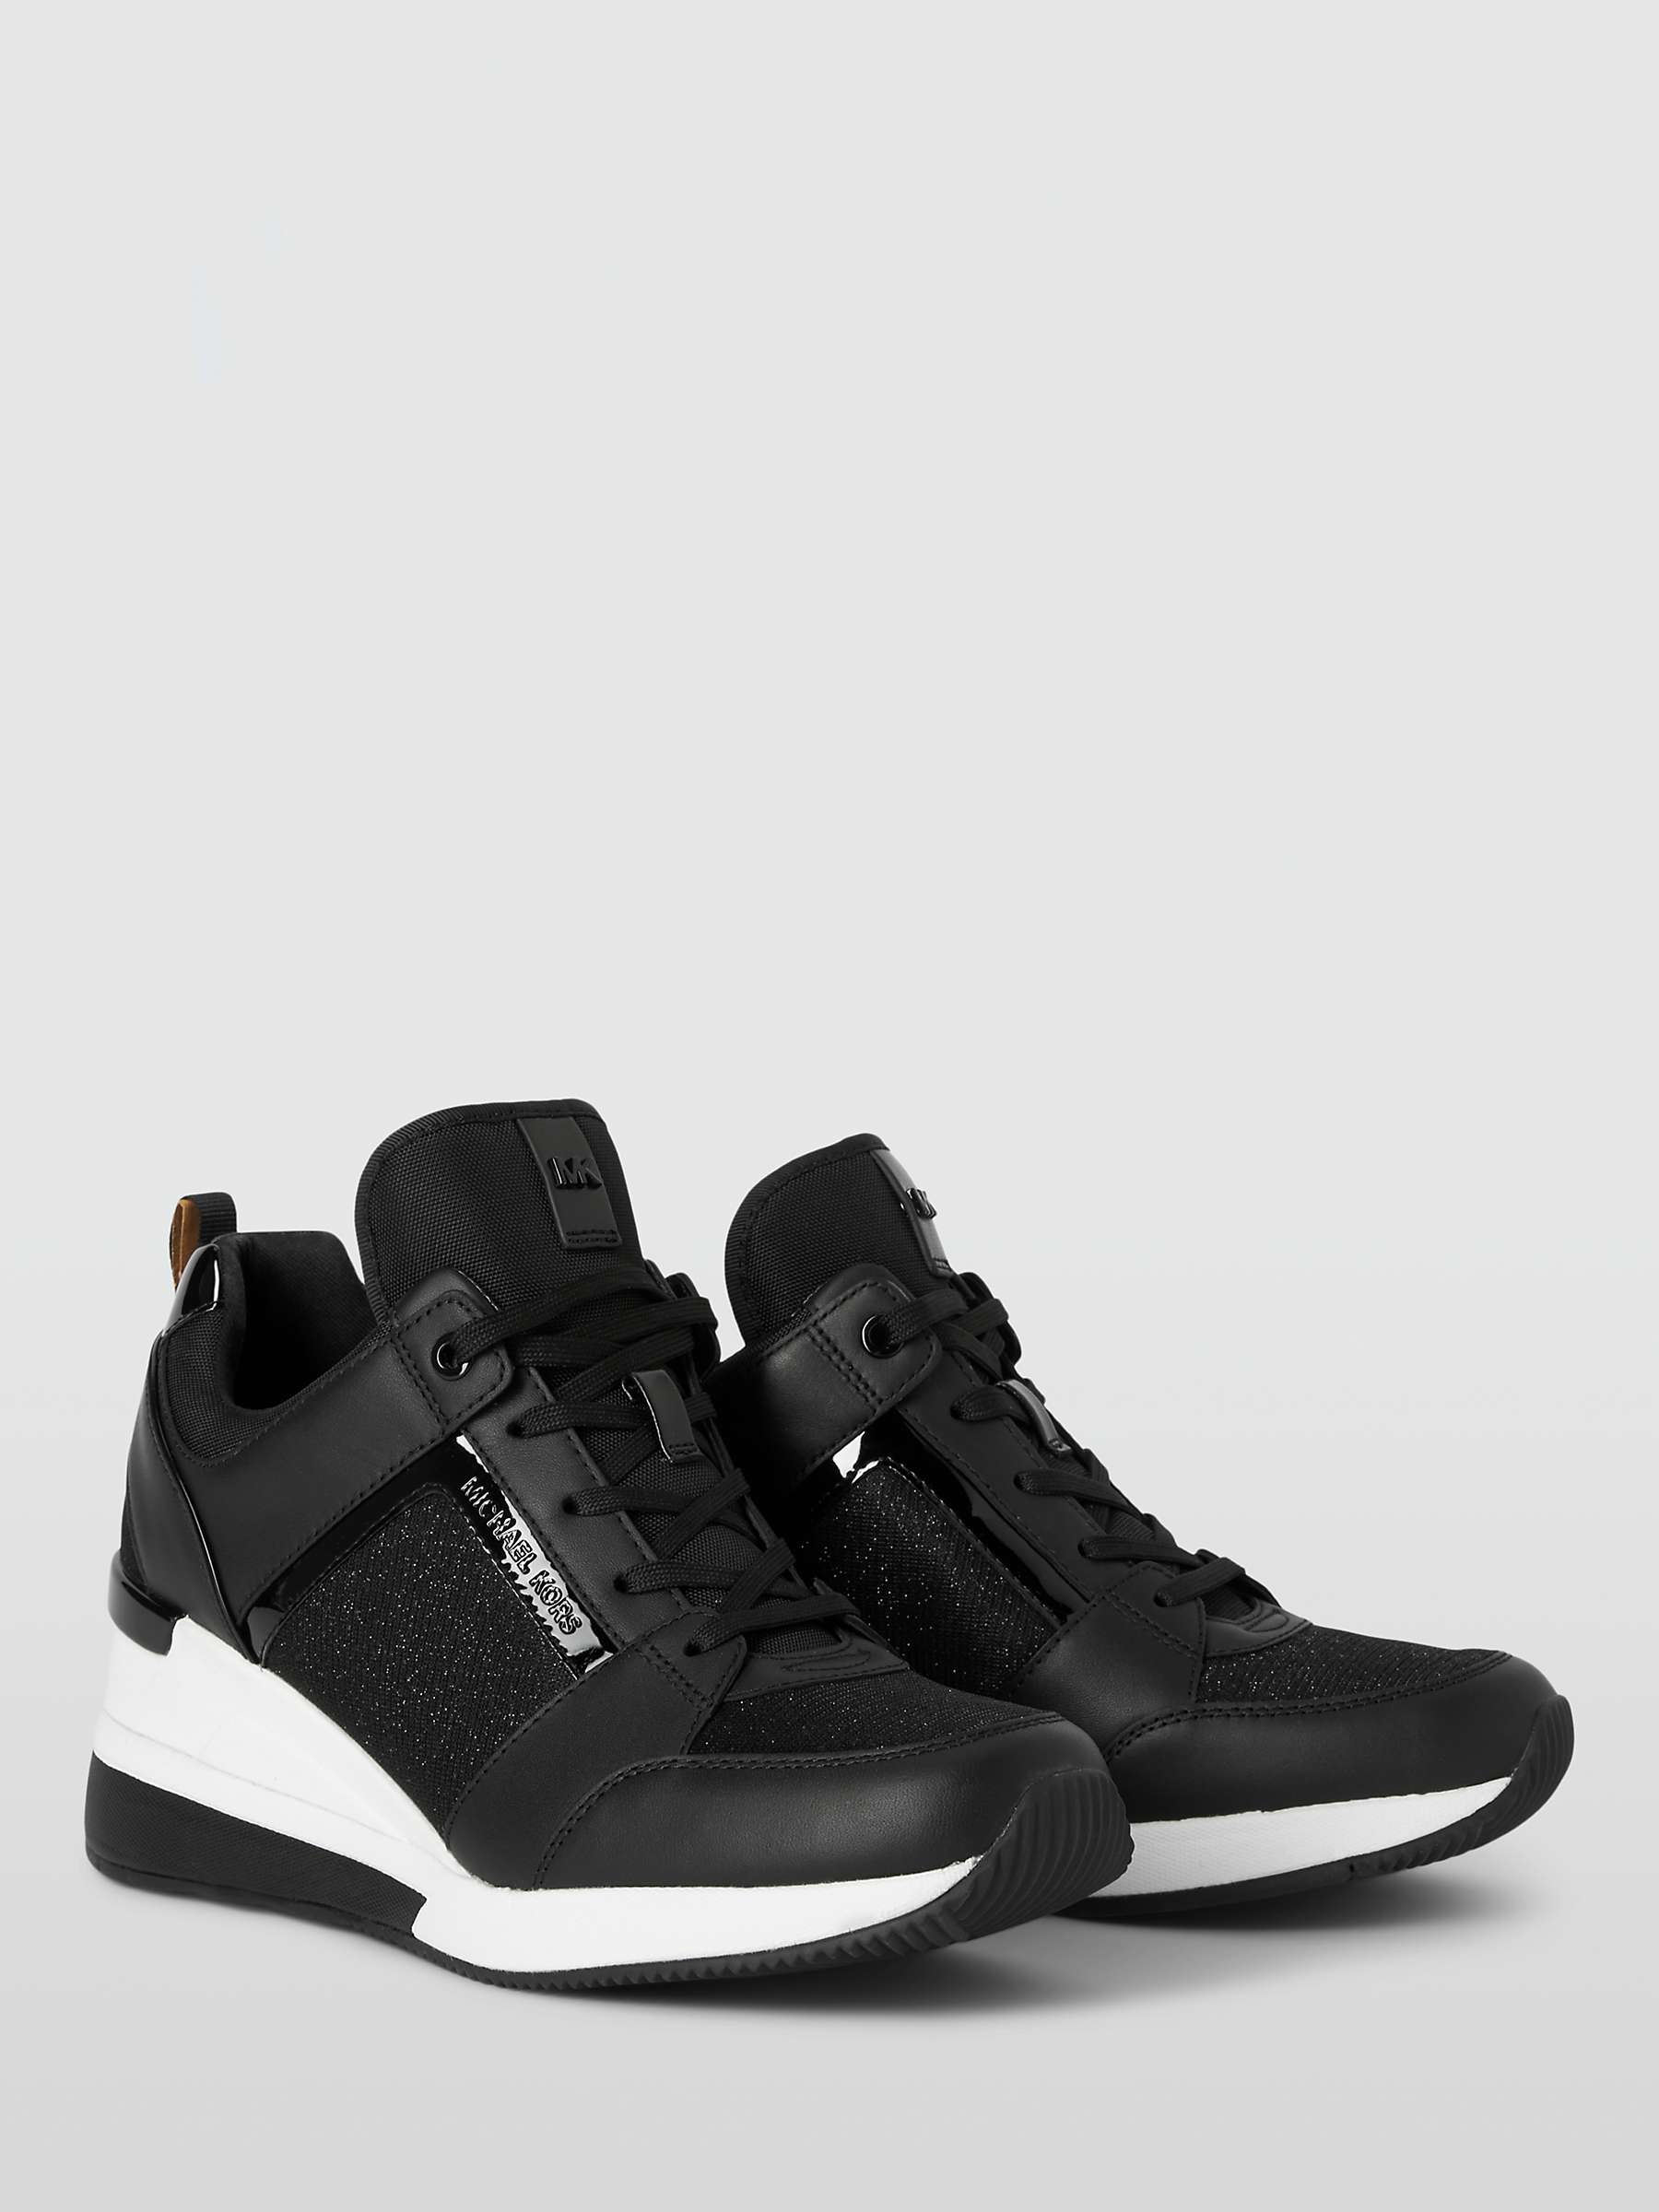 Buy Michael Kors Georgie Leather Wedge Heel Trainers Online at johnlewis.com